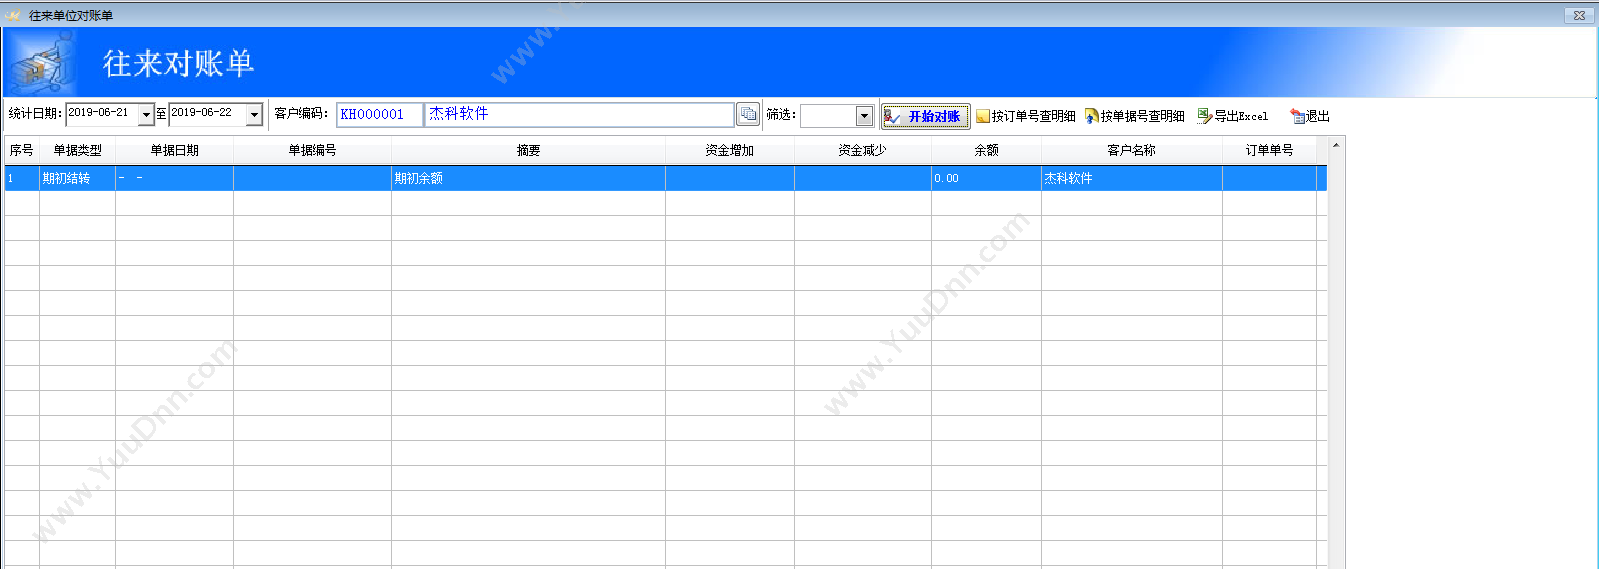 广州标领信息 标领汽配WMS仓库管理系统方案 仓储管理WMS